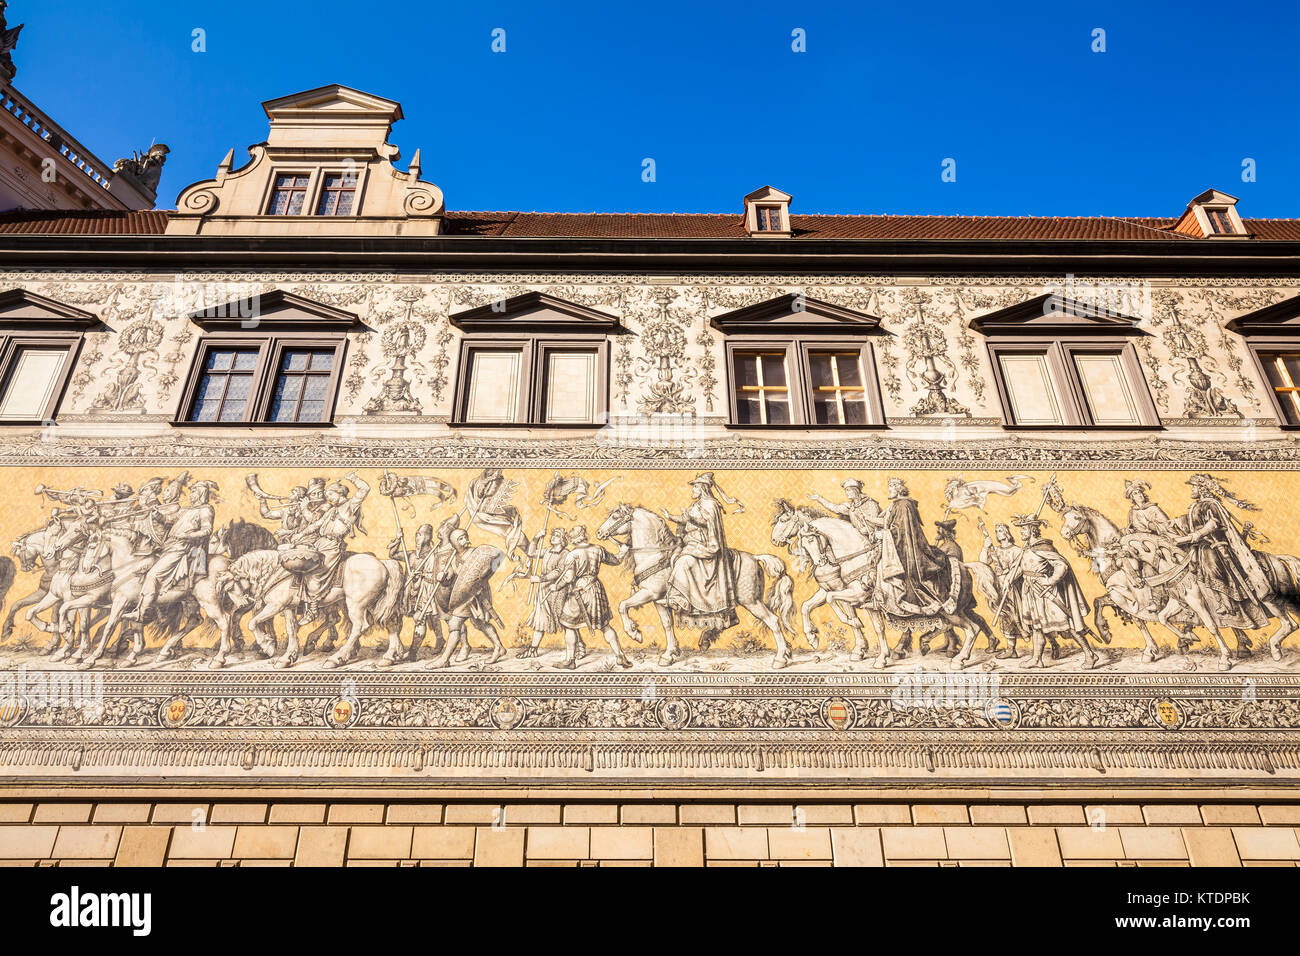 Deutschland, Sachsen, Dresden, Fürstenzug, Bild von Reiterzuges, Fliesen aus Meissner Porzellan Banque D'Images